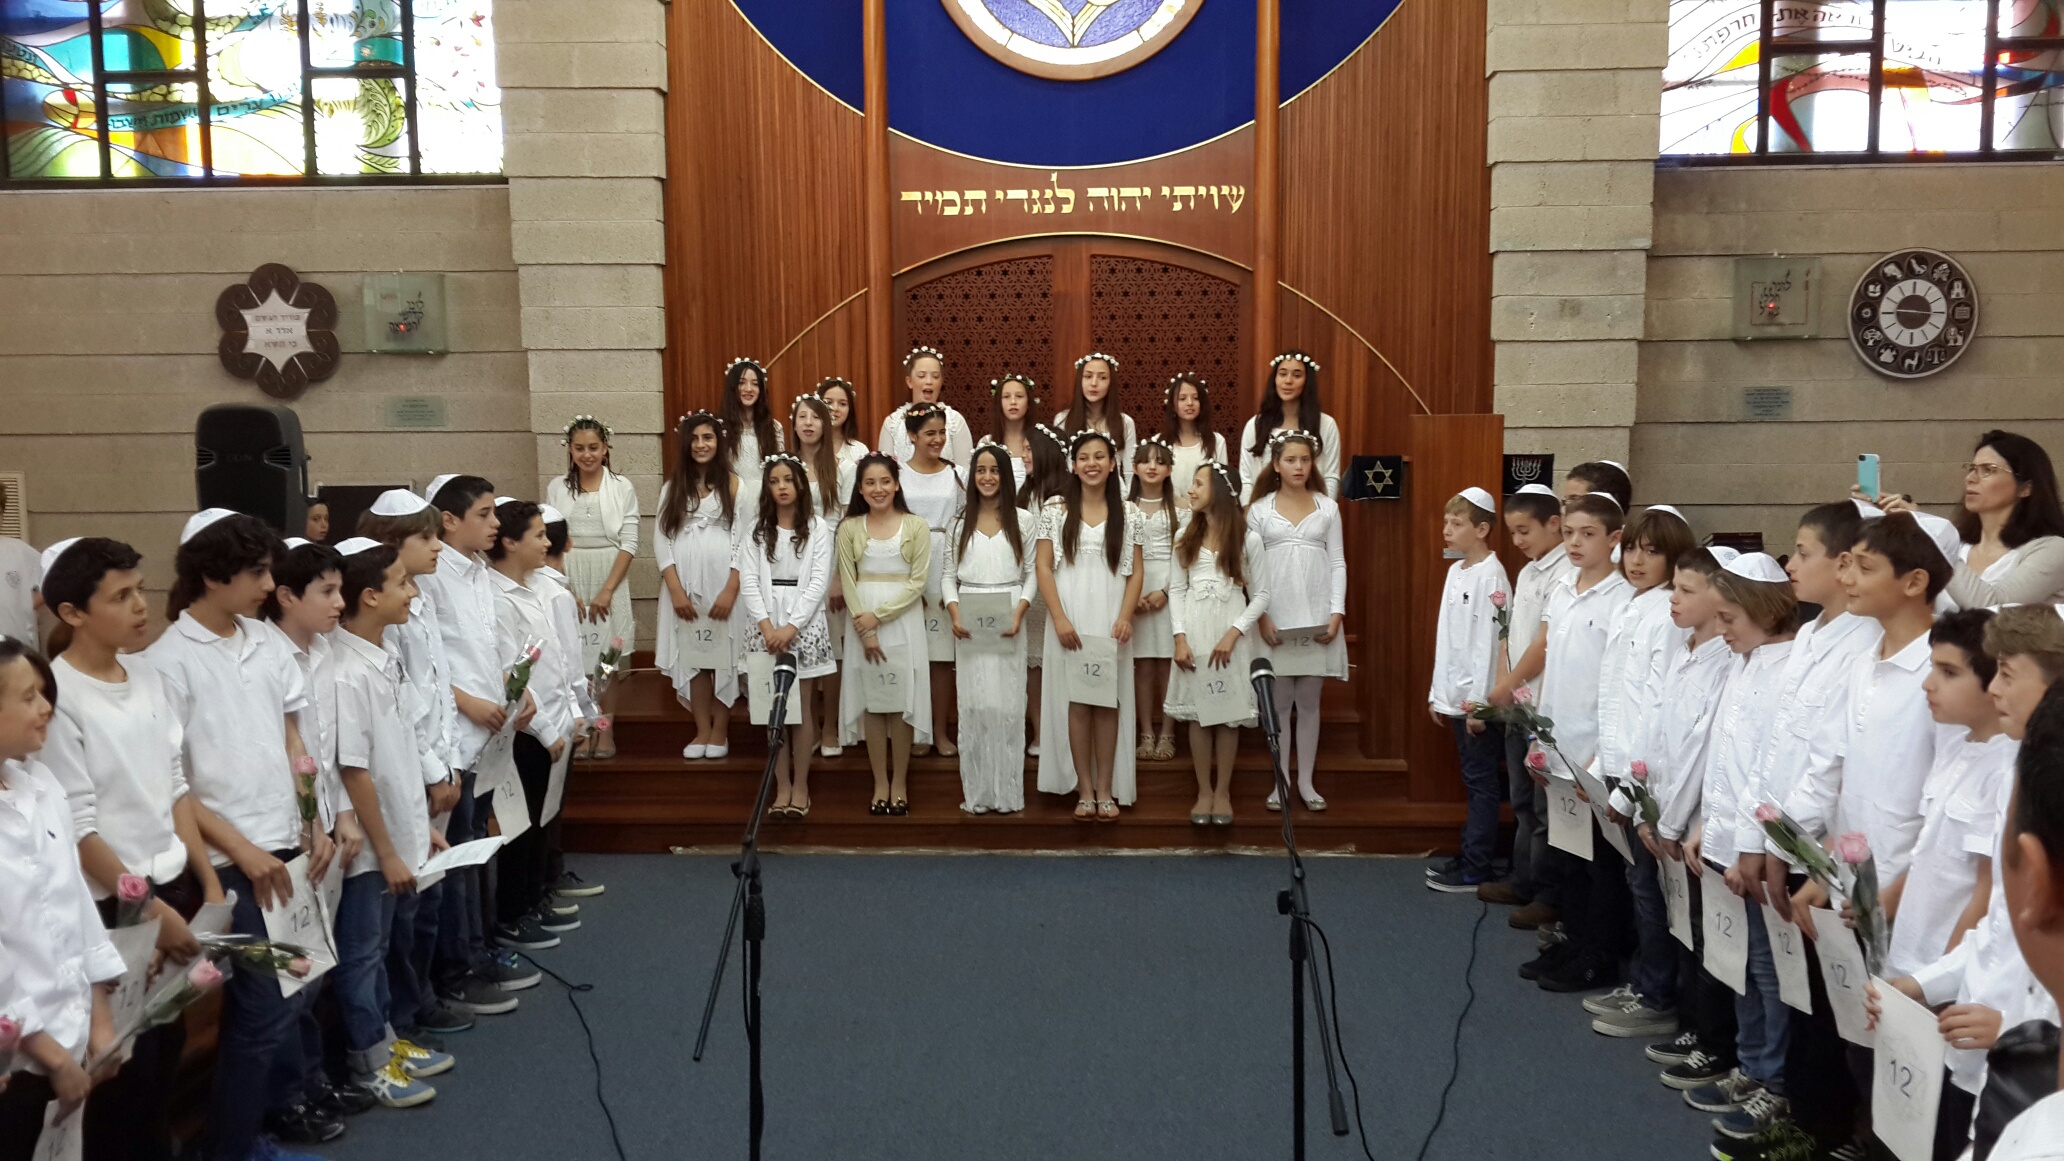 טקס בנות מצווה בבית הכנסת "היכל הבנים" (הגדל)